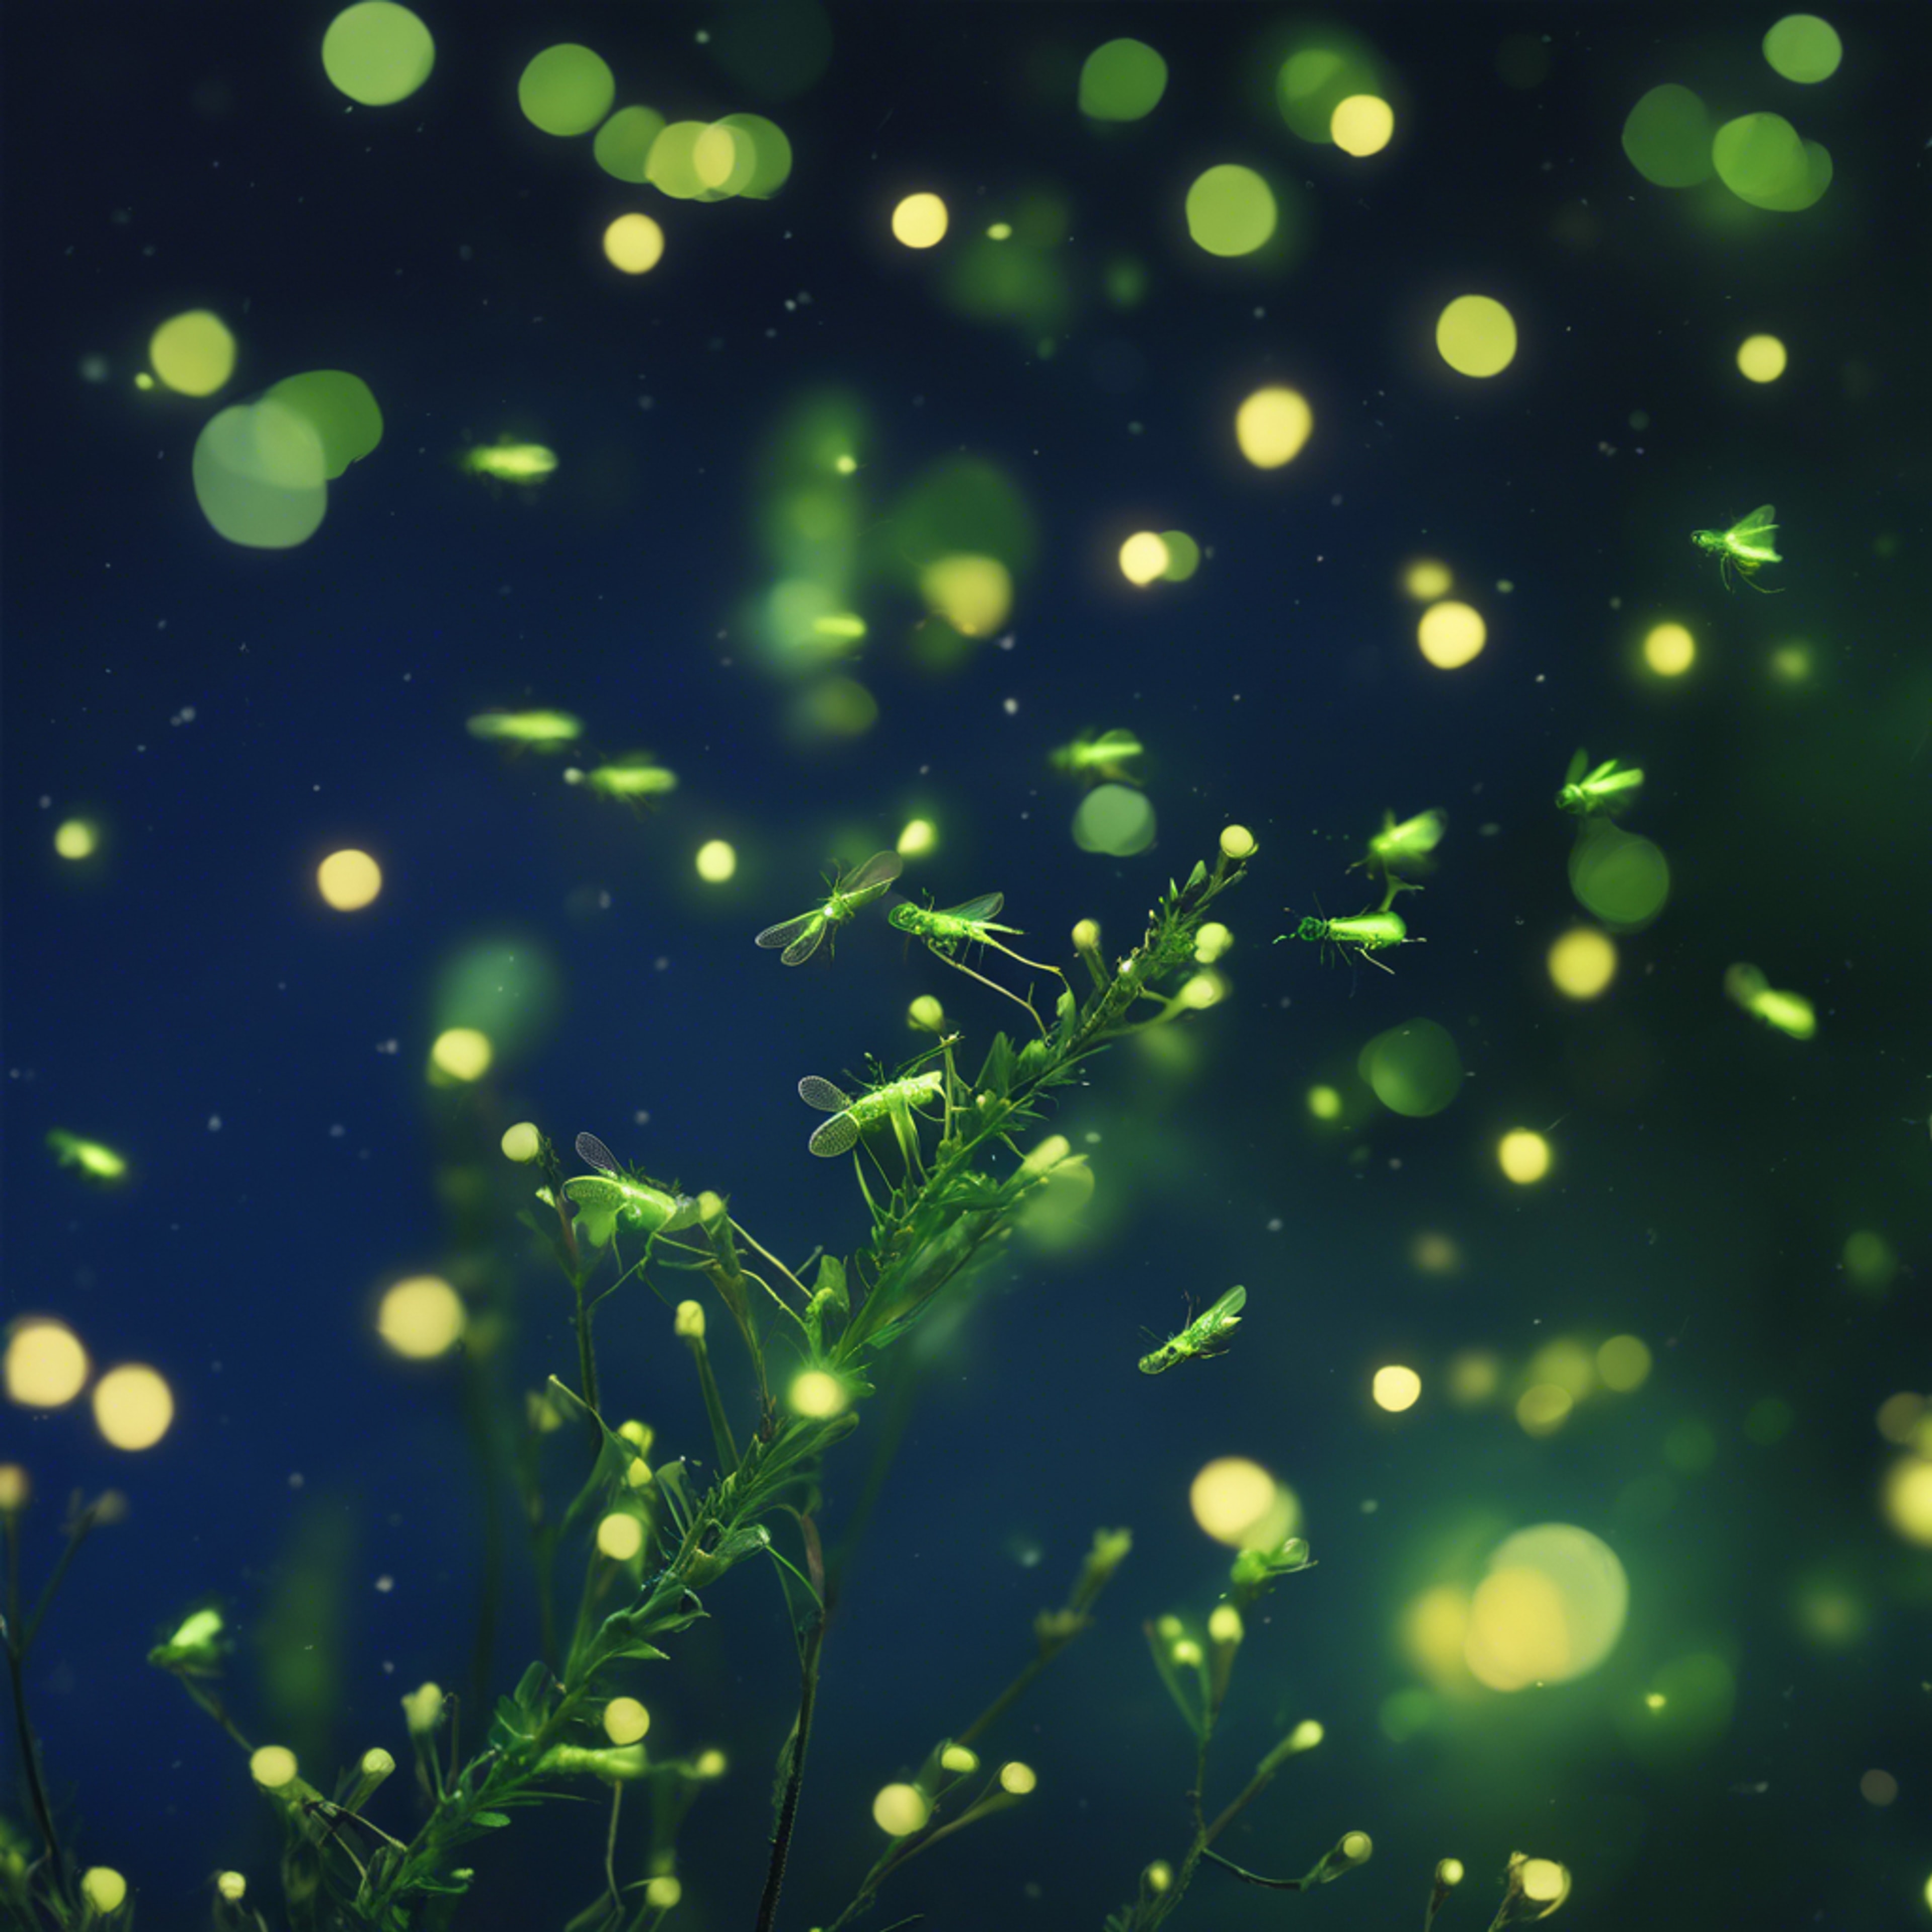 A myriad of emerald green fireflies flickering against a deep twilight blue sky. Sfondo[603476c68fd84f259627]